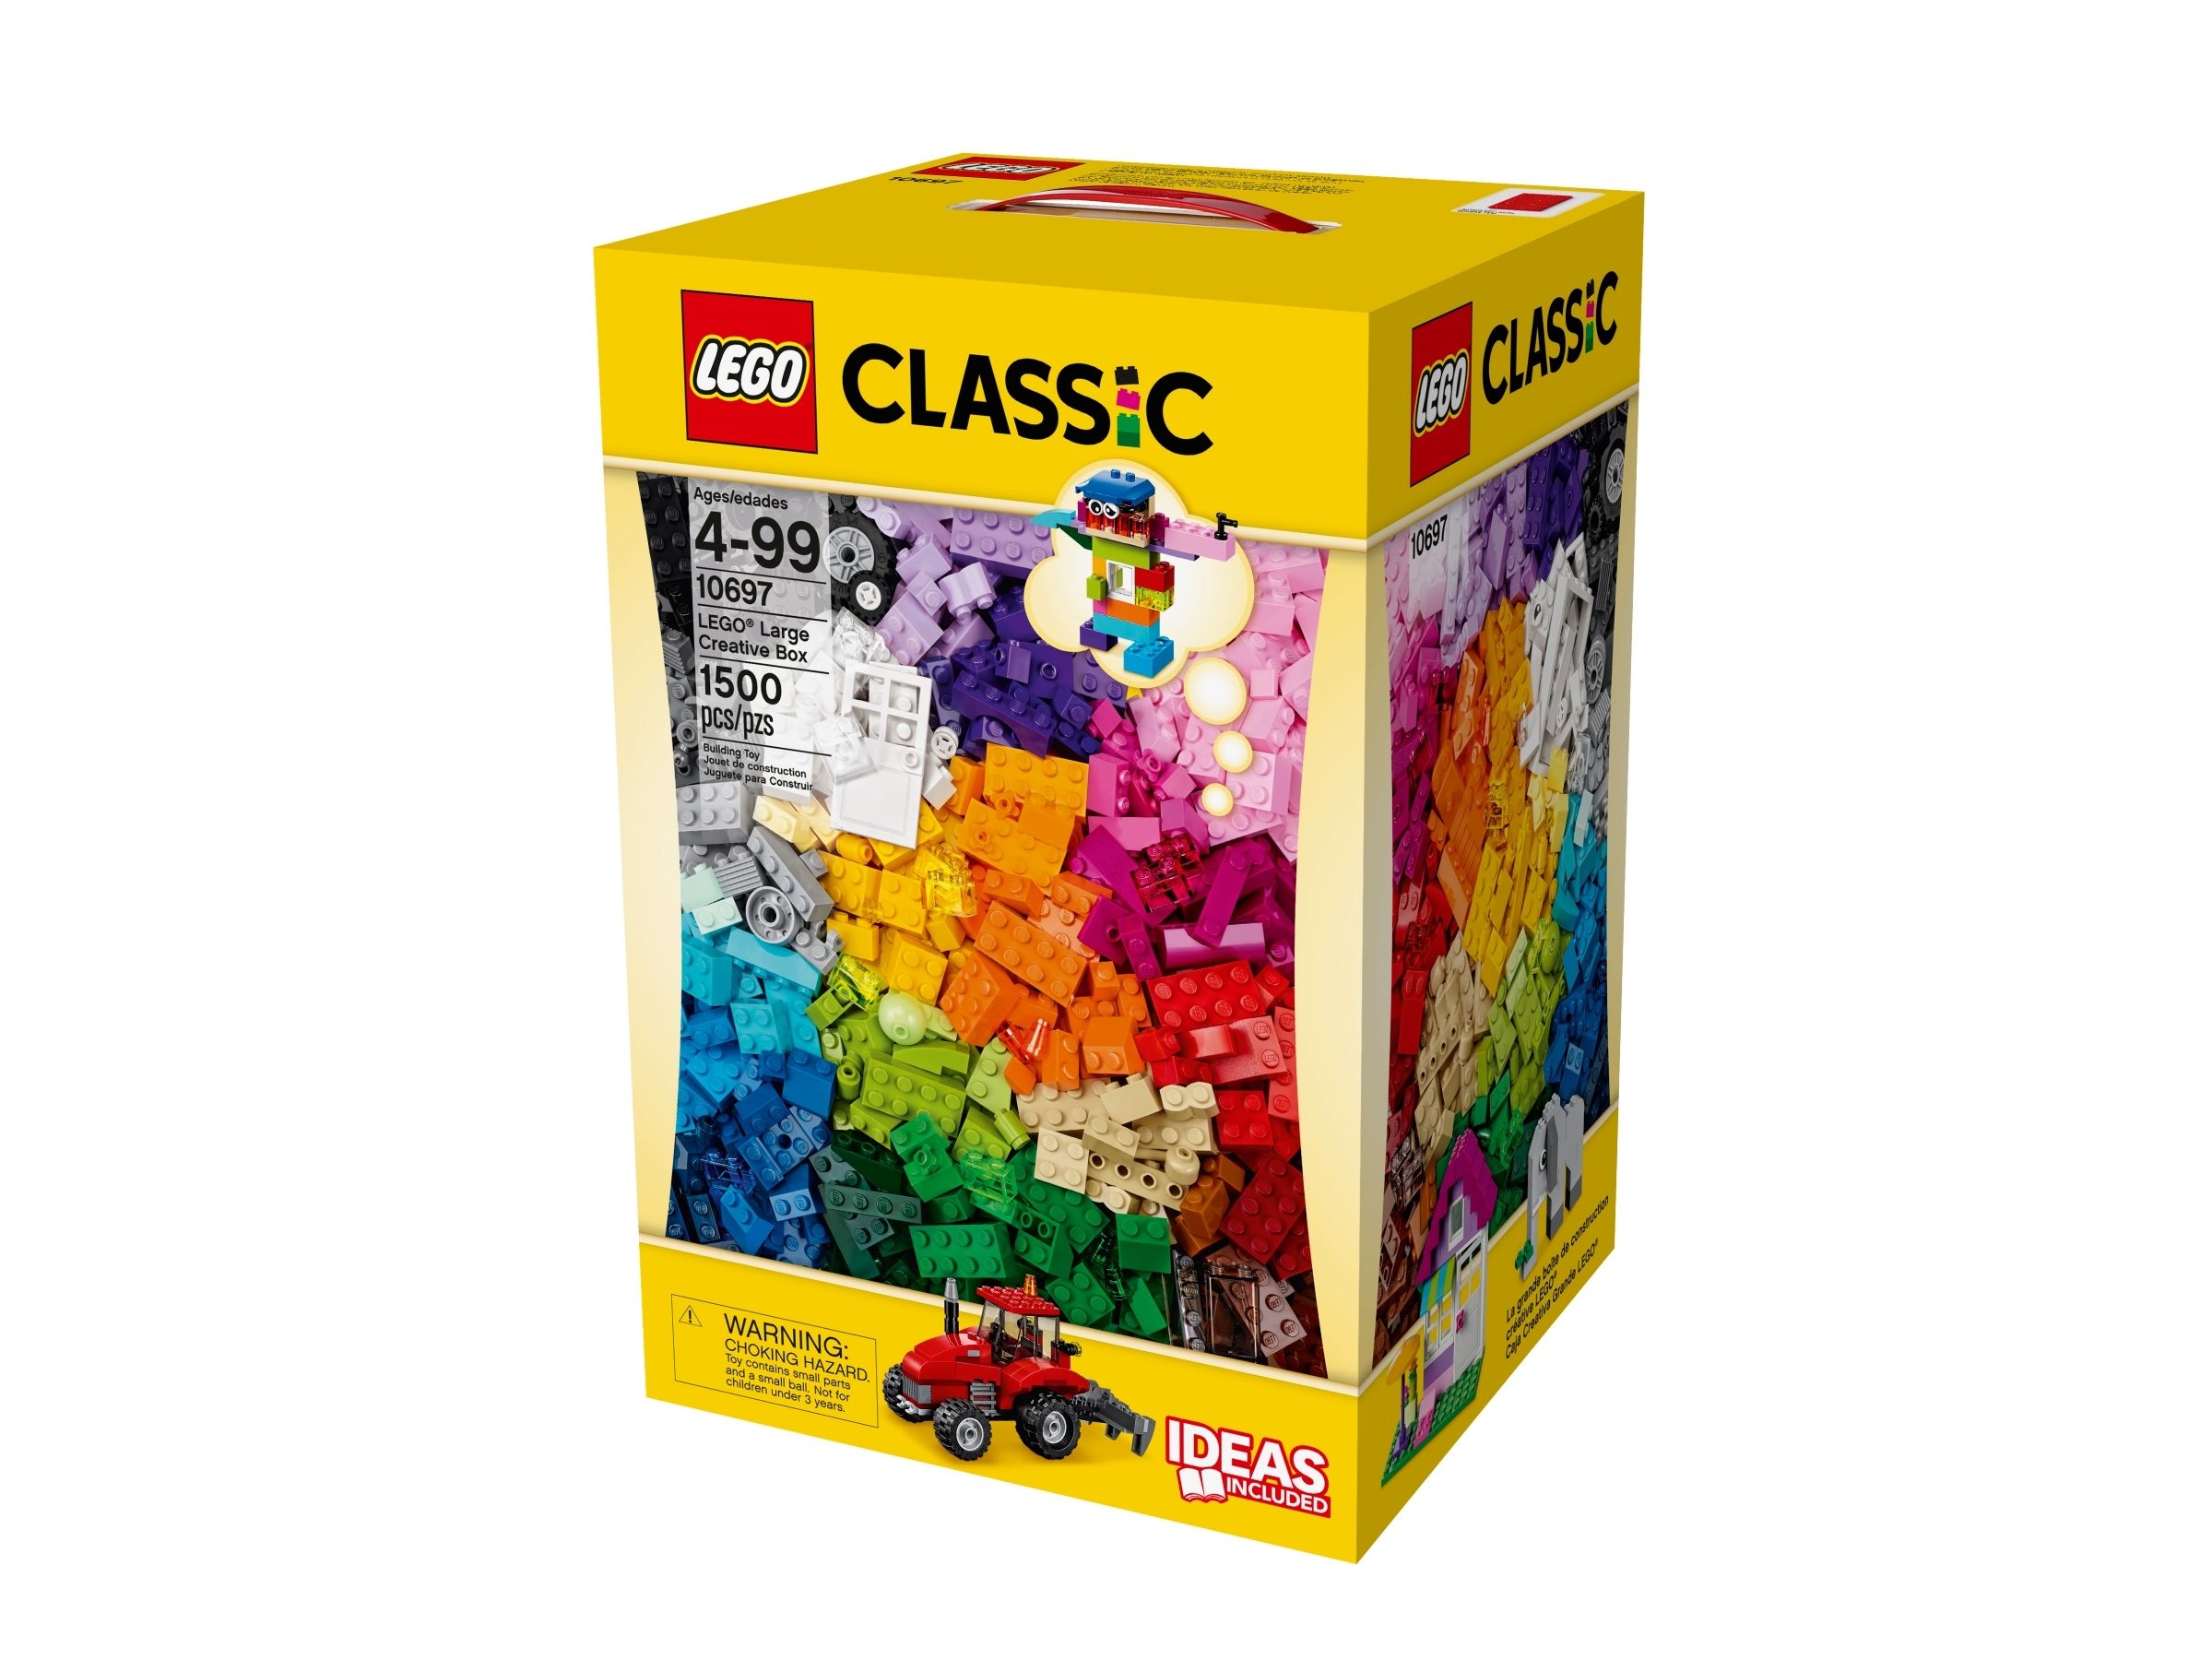 Theseus limiet Verknald LEGO® Large Creative Box 10697 | Classic | Buy online at the Official LEGO®  Shop DE